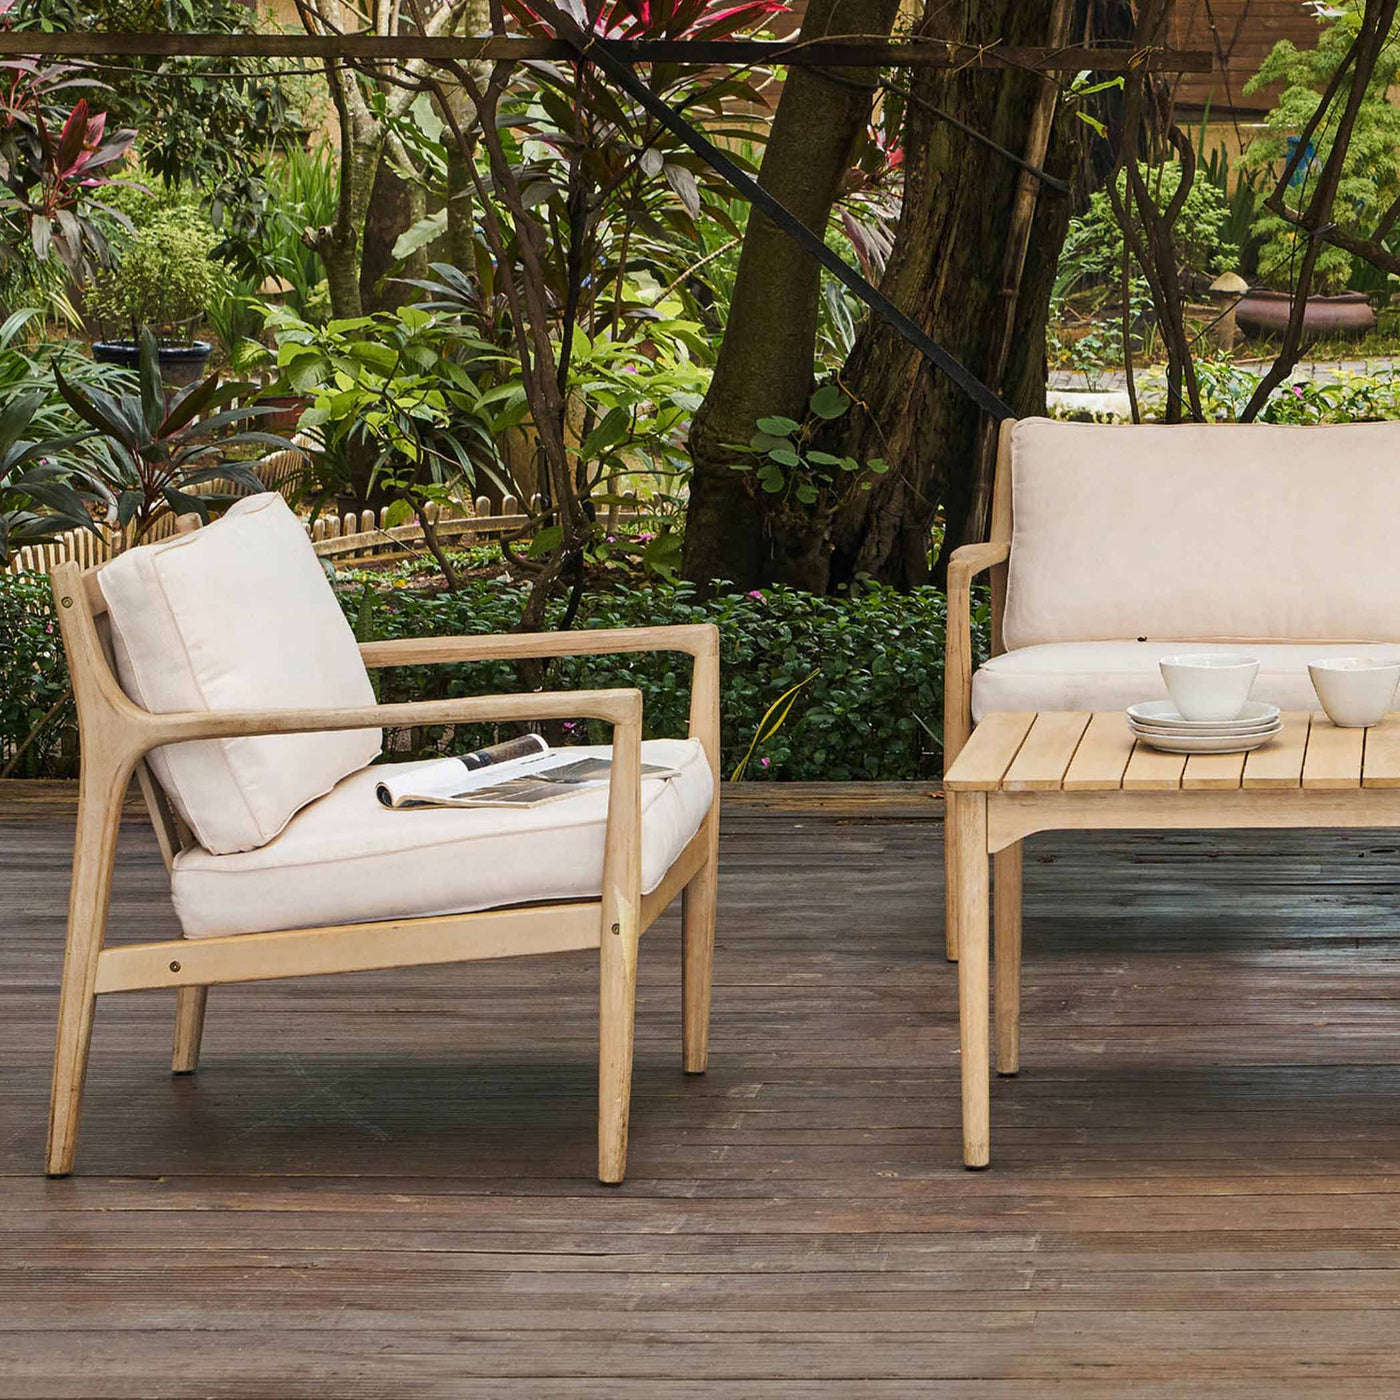 Découvrez l'élégance ultime avec le fauteuil d'extérieur Sonoma. Fabriqué avec du bois d'acacia certifié FSC, il allie durabilité, beauté et sophistication